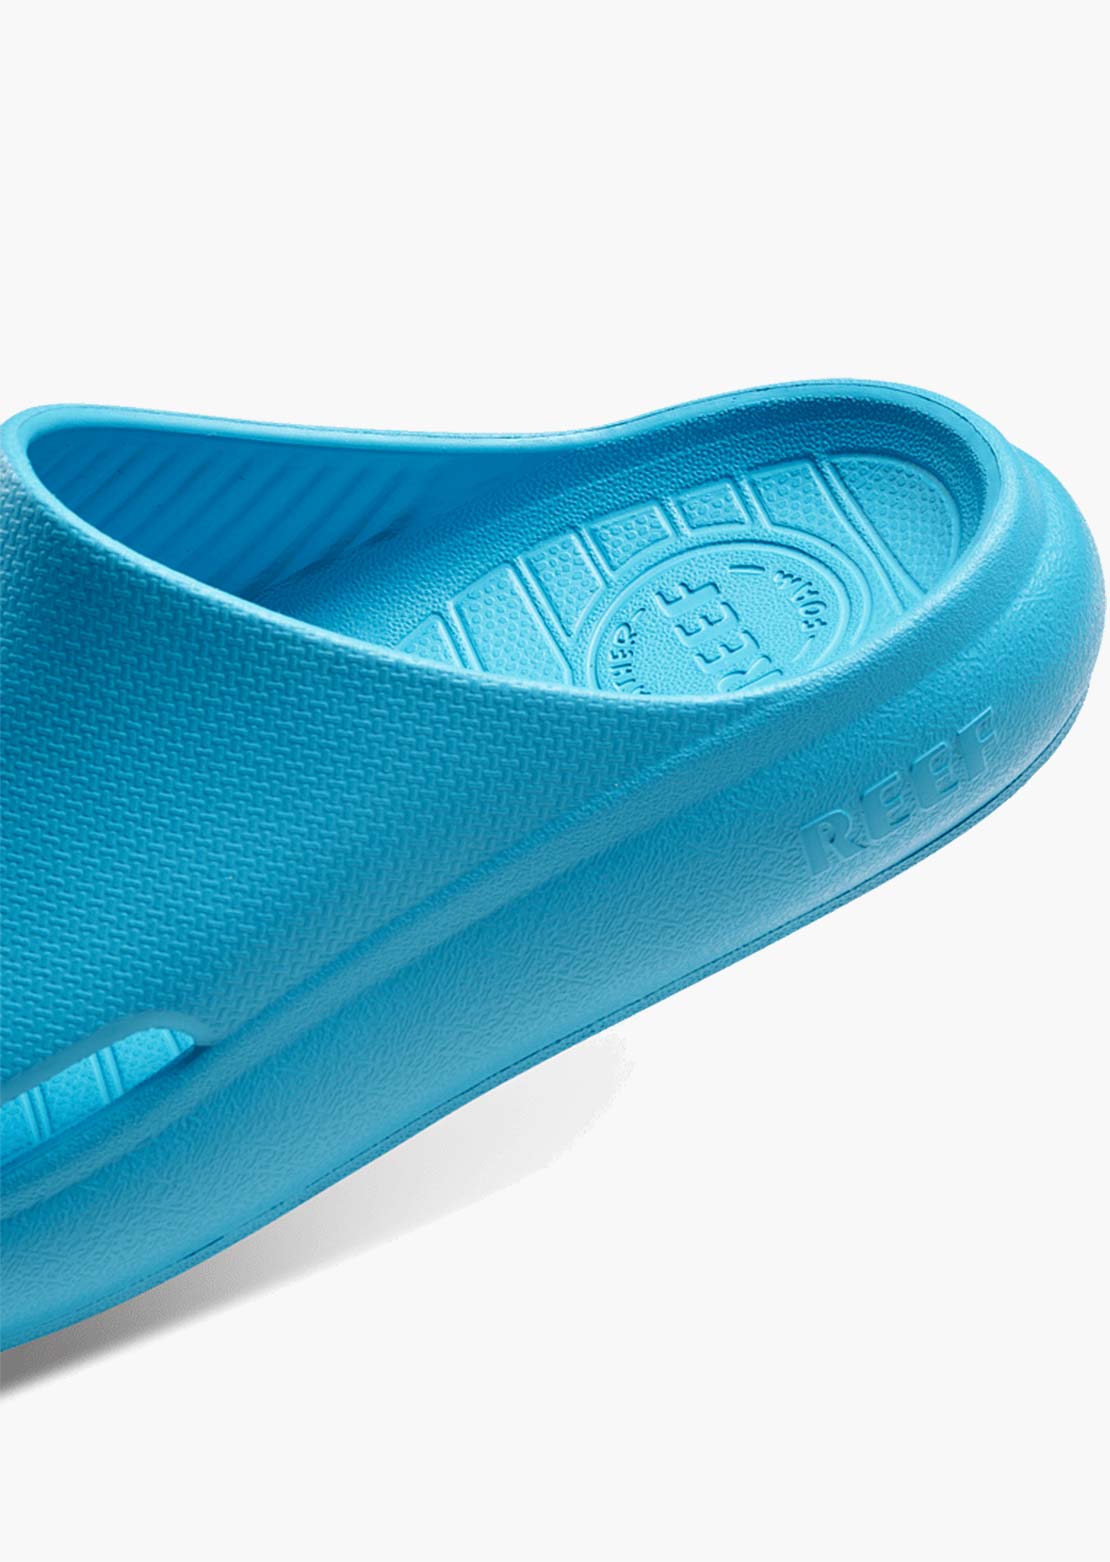 Reef Junior Rio Slide Sandals Scuba Blue